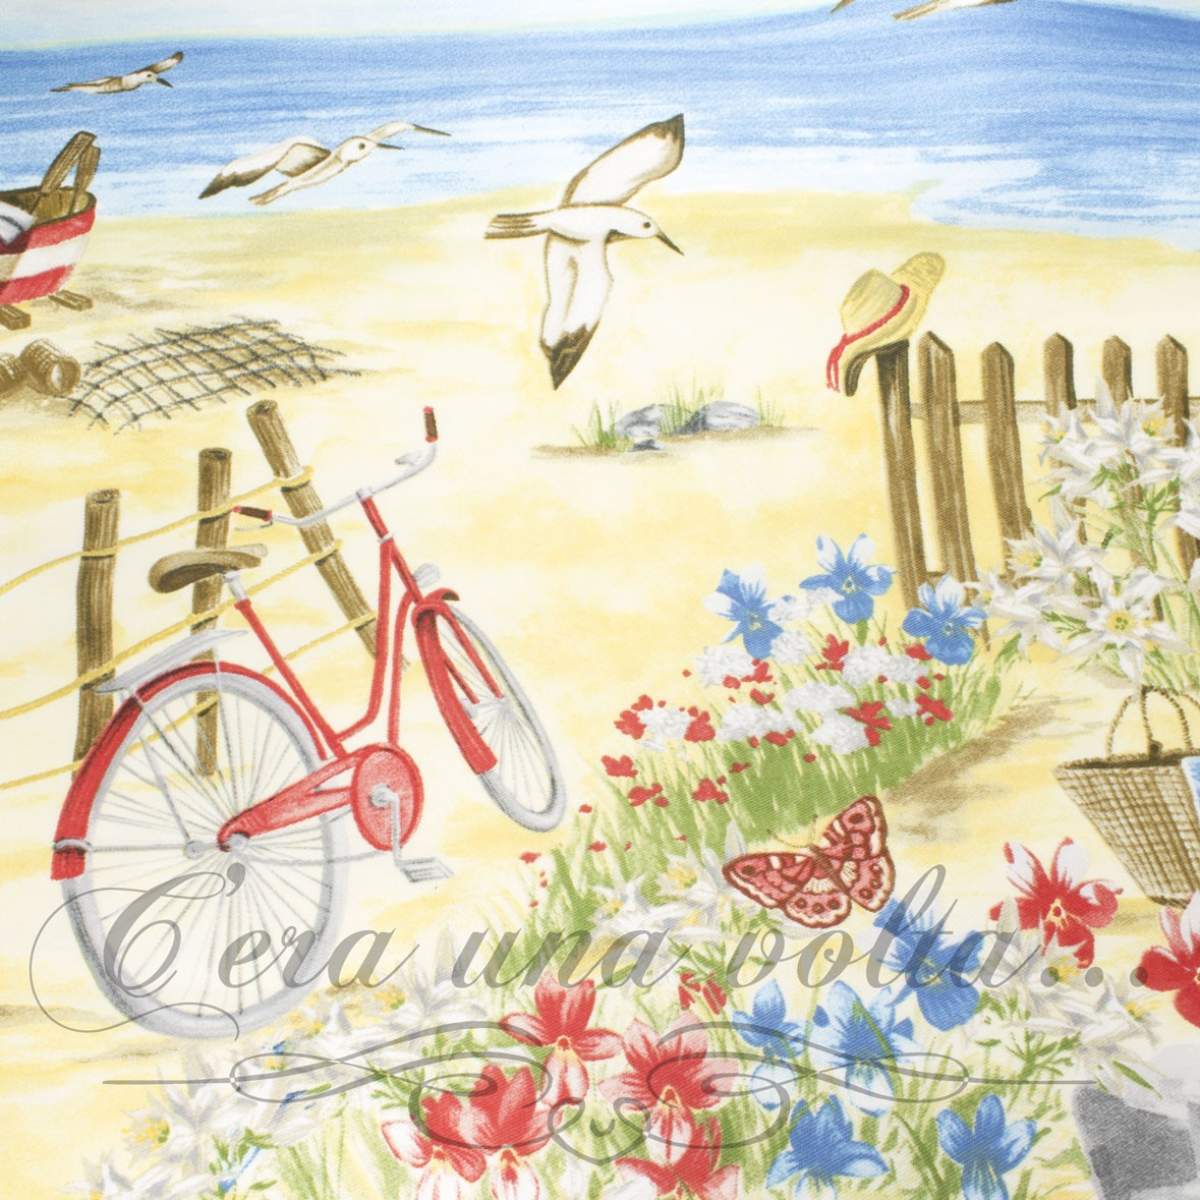 Tessuto stampato mod. estate con spiaggia, ombrellone, staccionata, scogli, mare e gabbiani, bicicletta